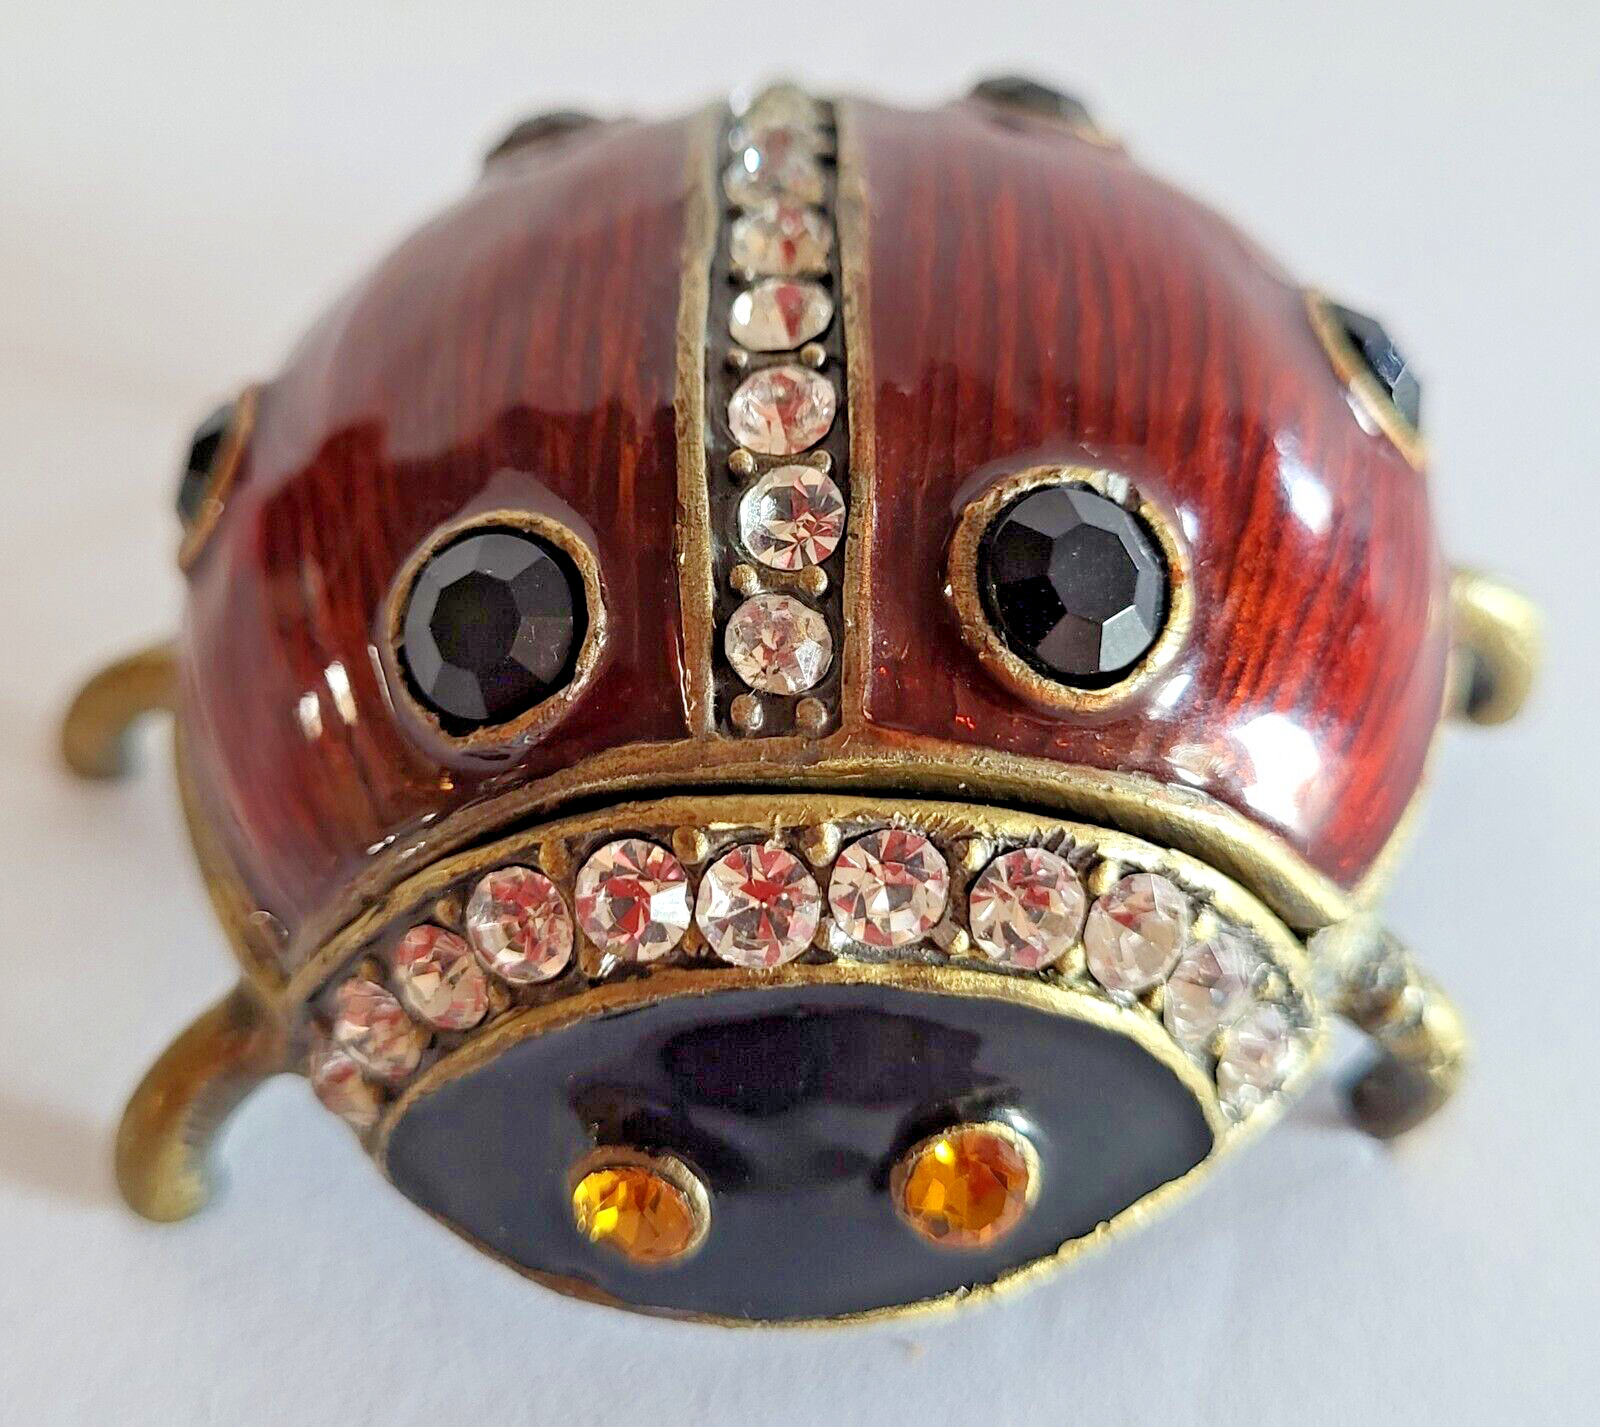 Enameled and Crystal Embellished Ladybug Trinket Box